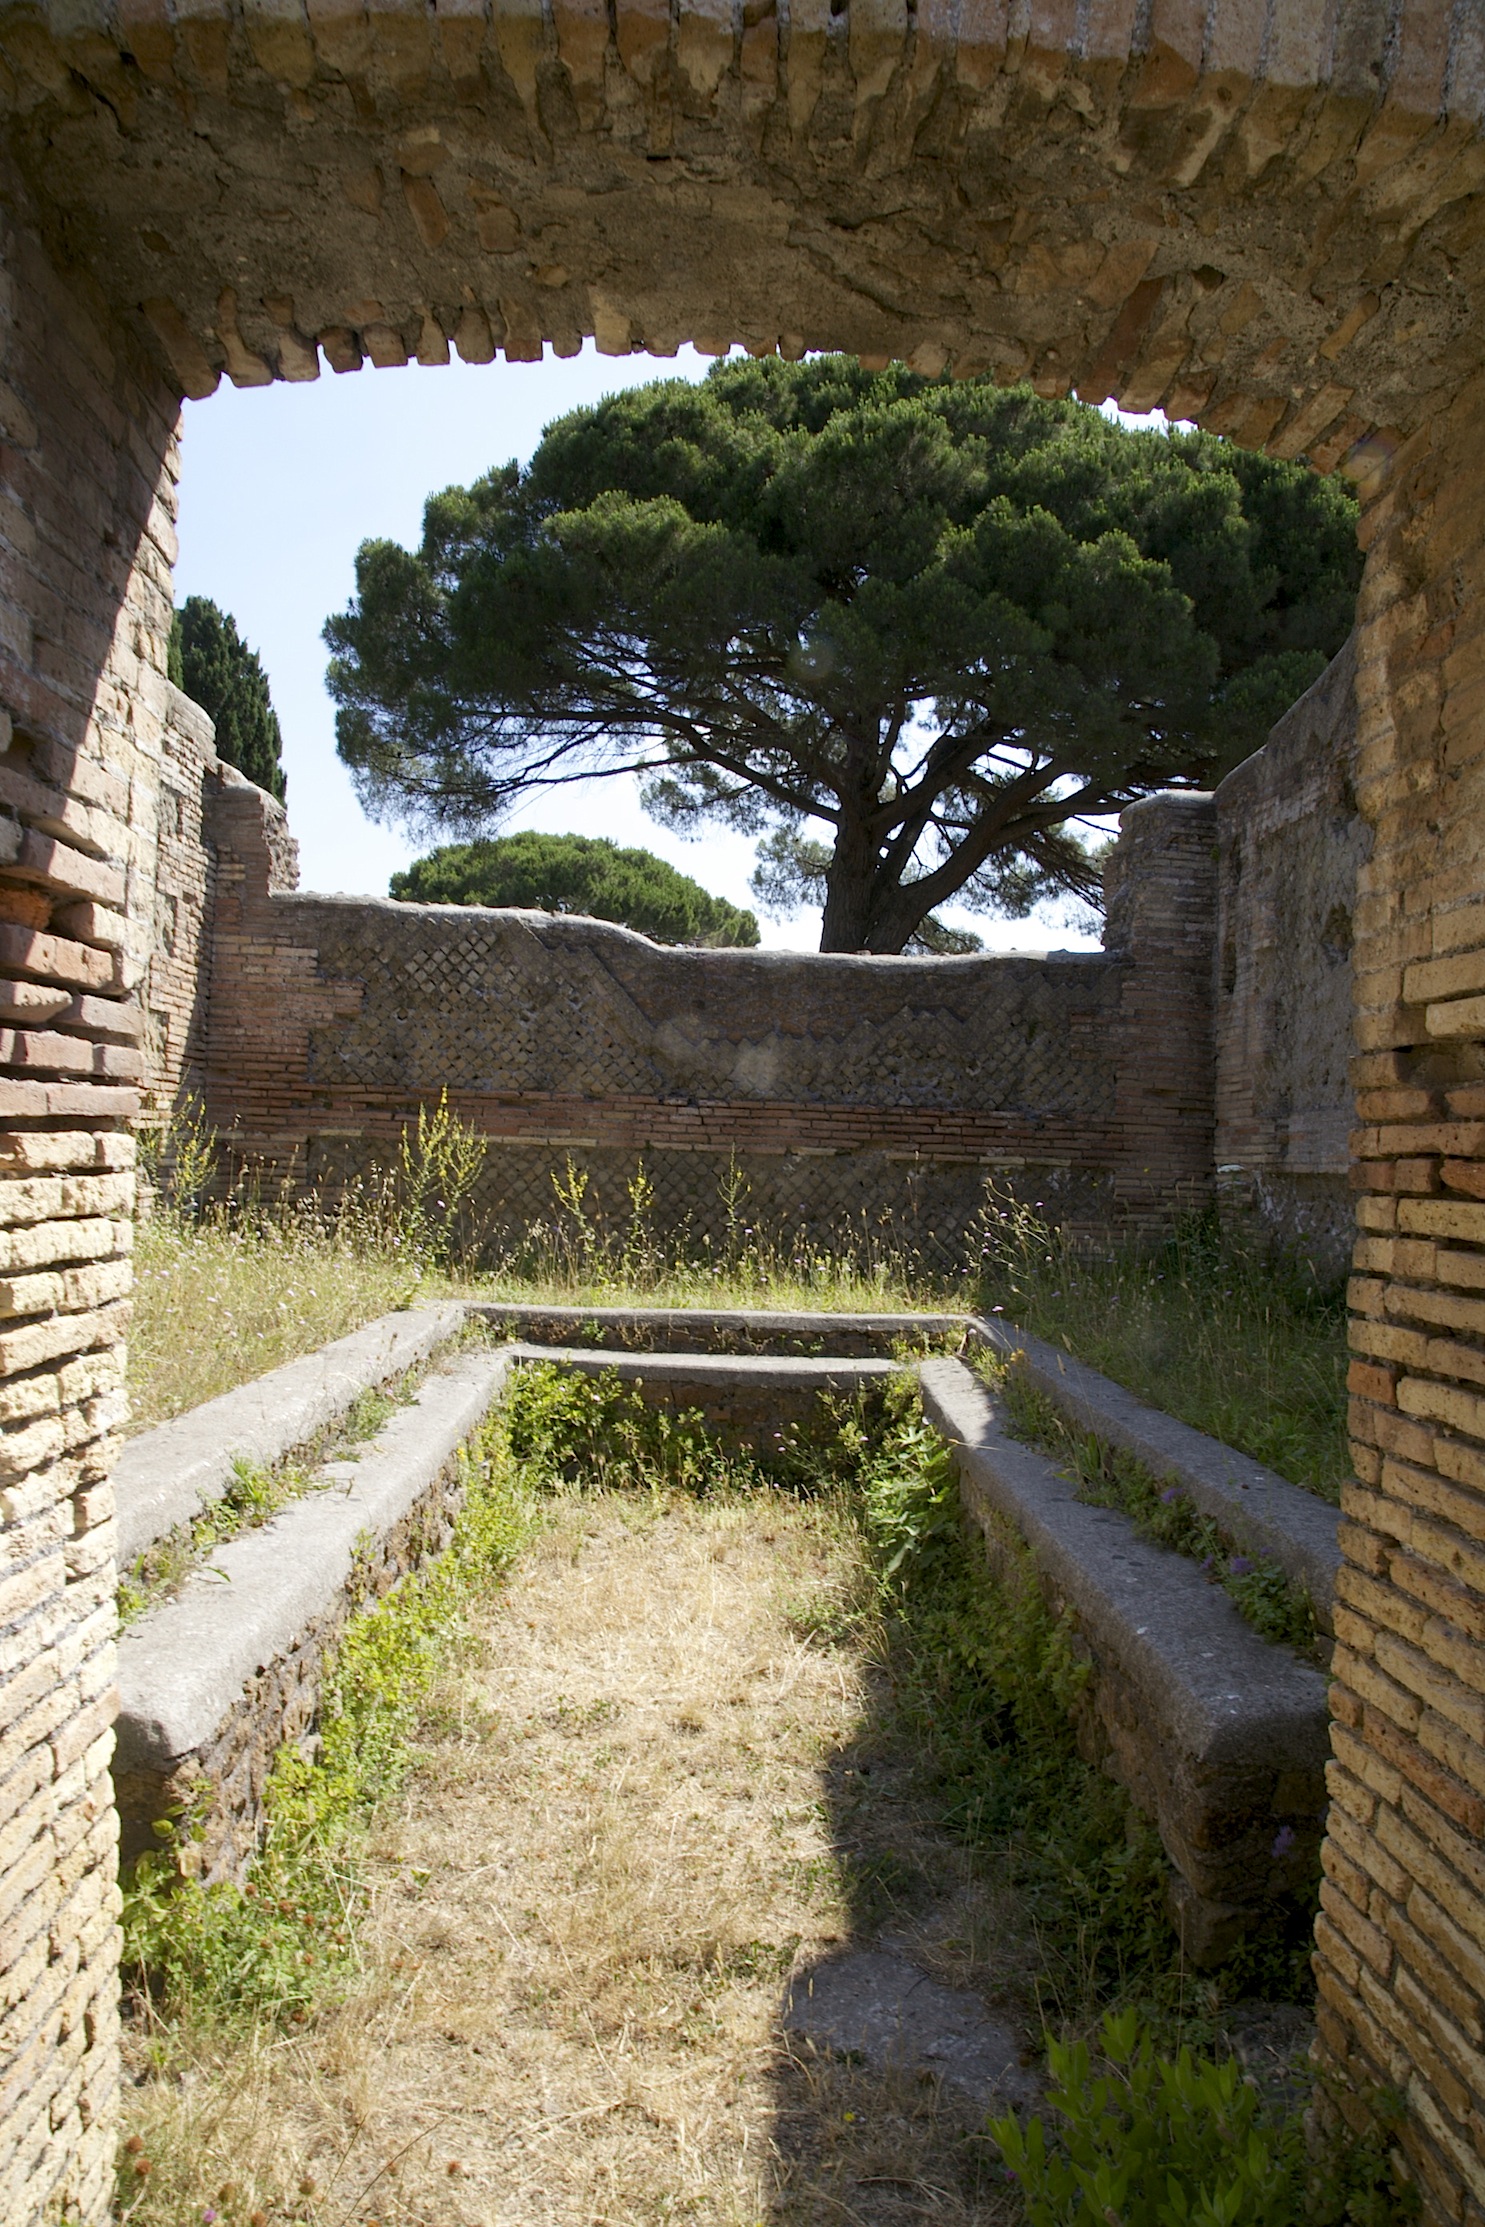 La nostra storia. L’industria turistica nell’antico porto di Roma: accoglienza perfetta, metodi talvolta discutibili